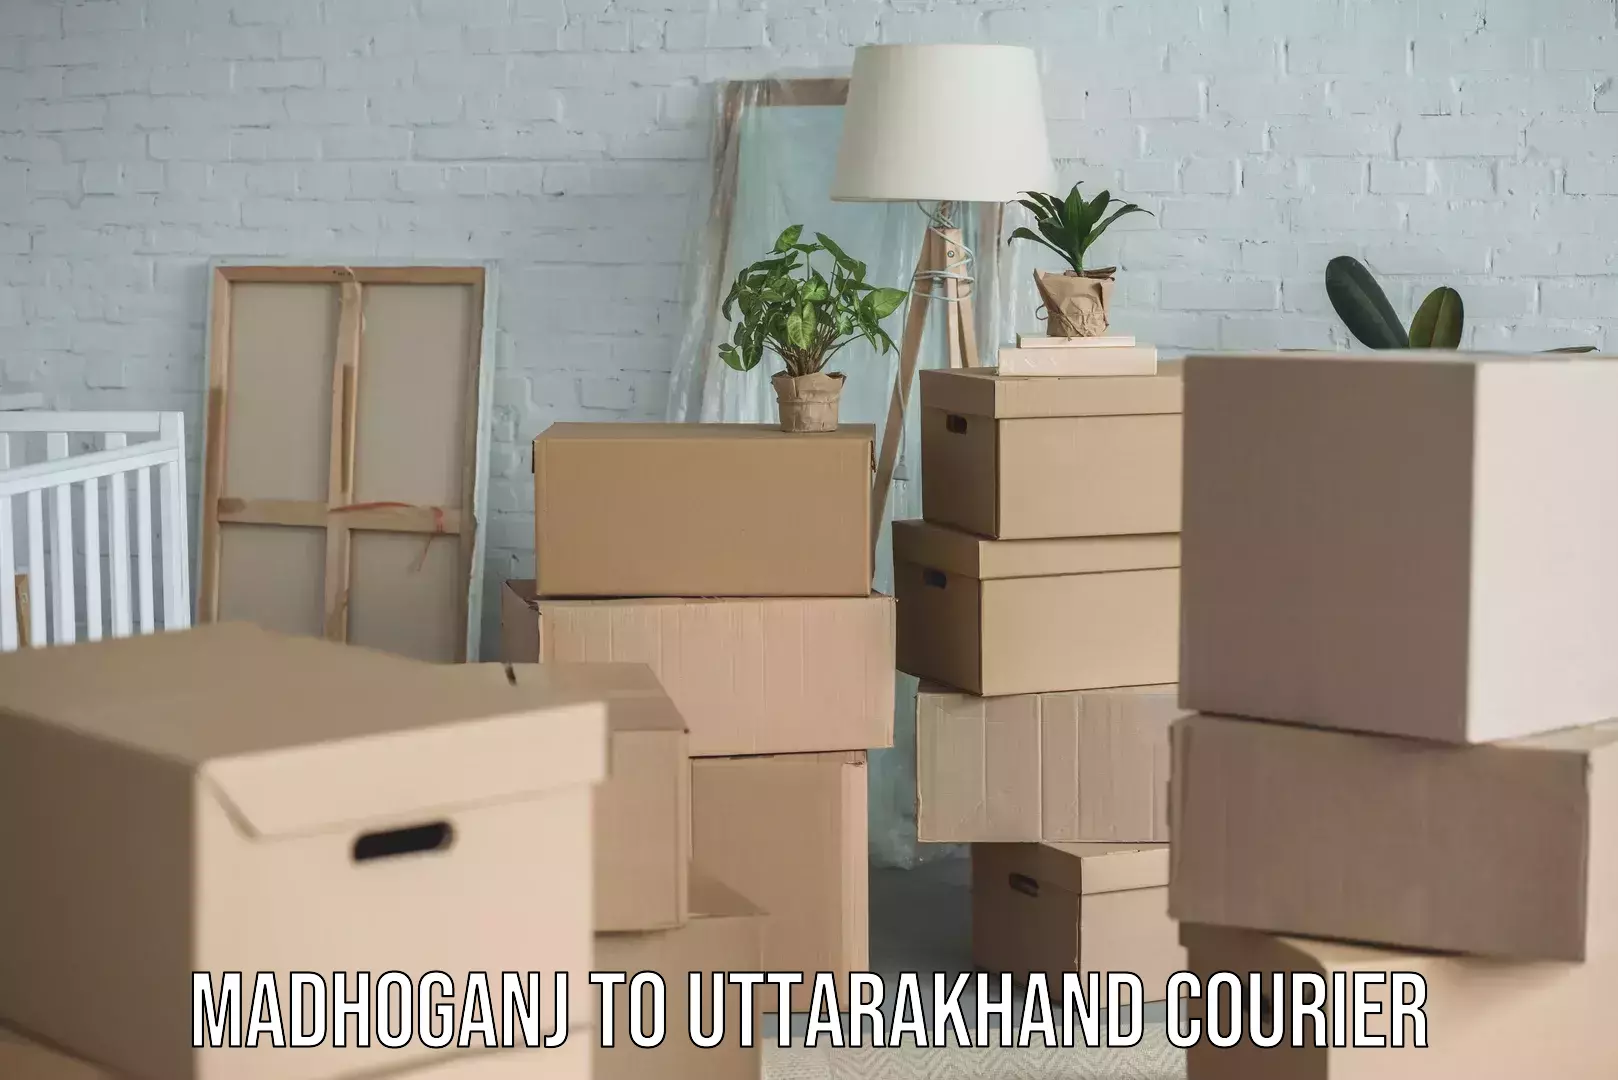 Trusted furniture movers Madhoganj to Uttarakhand